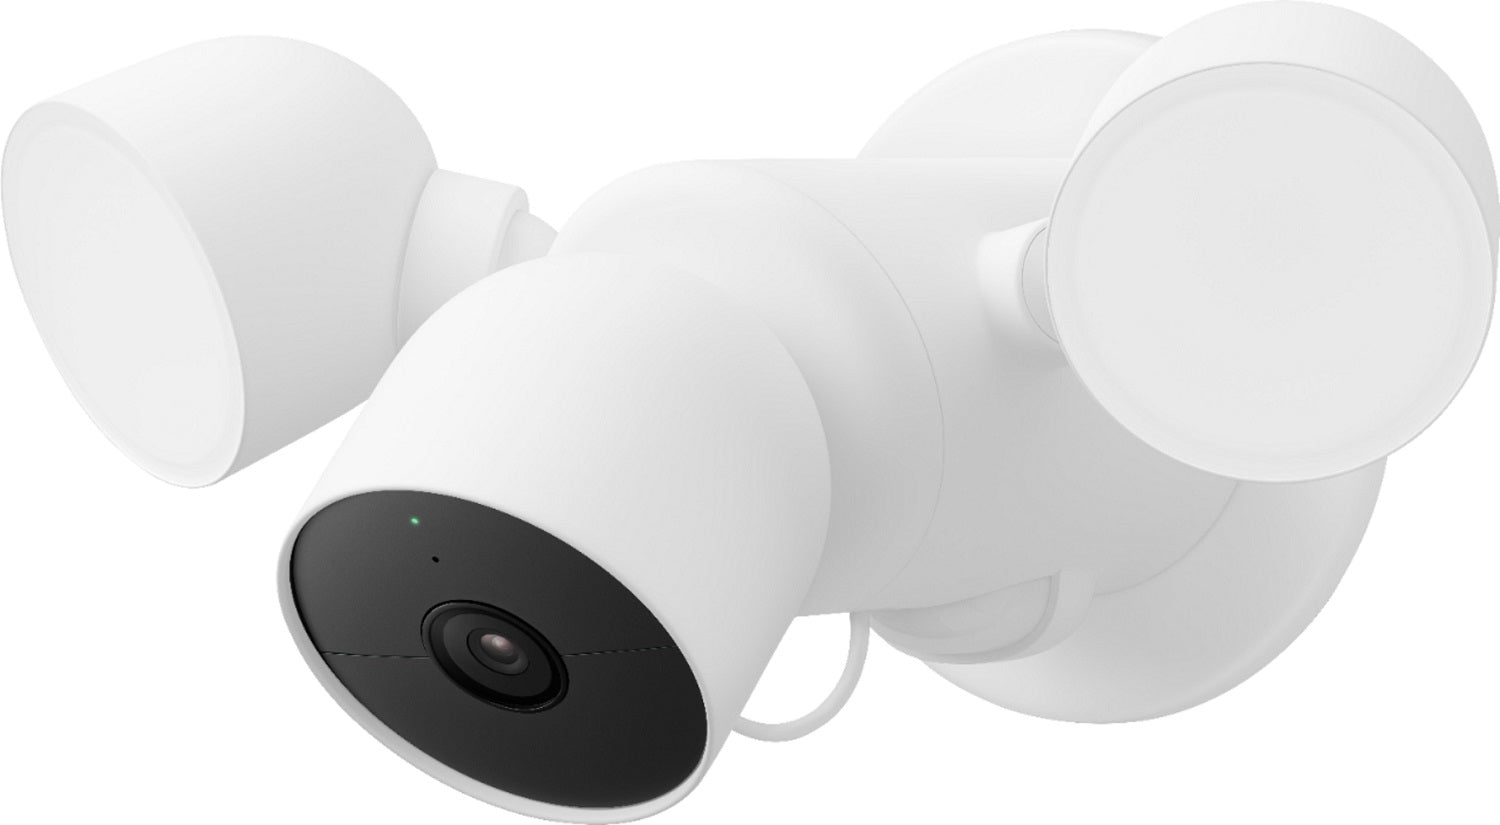 Google Nest Cam Smart Security Camera with Floodlight, GA02411-US - Snow (New)